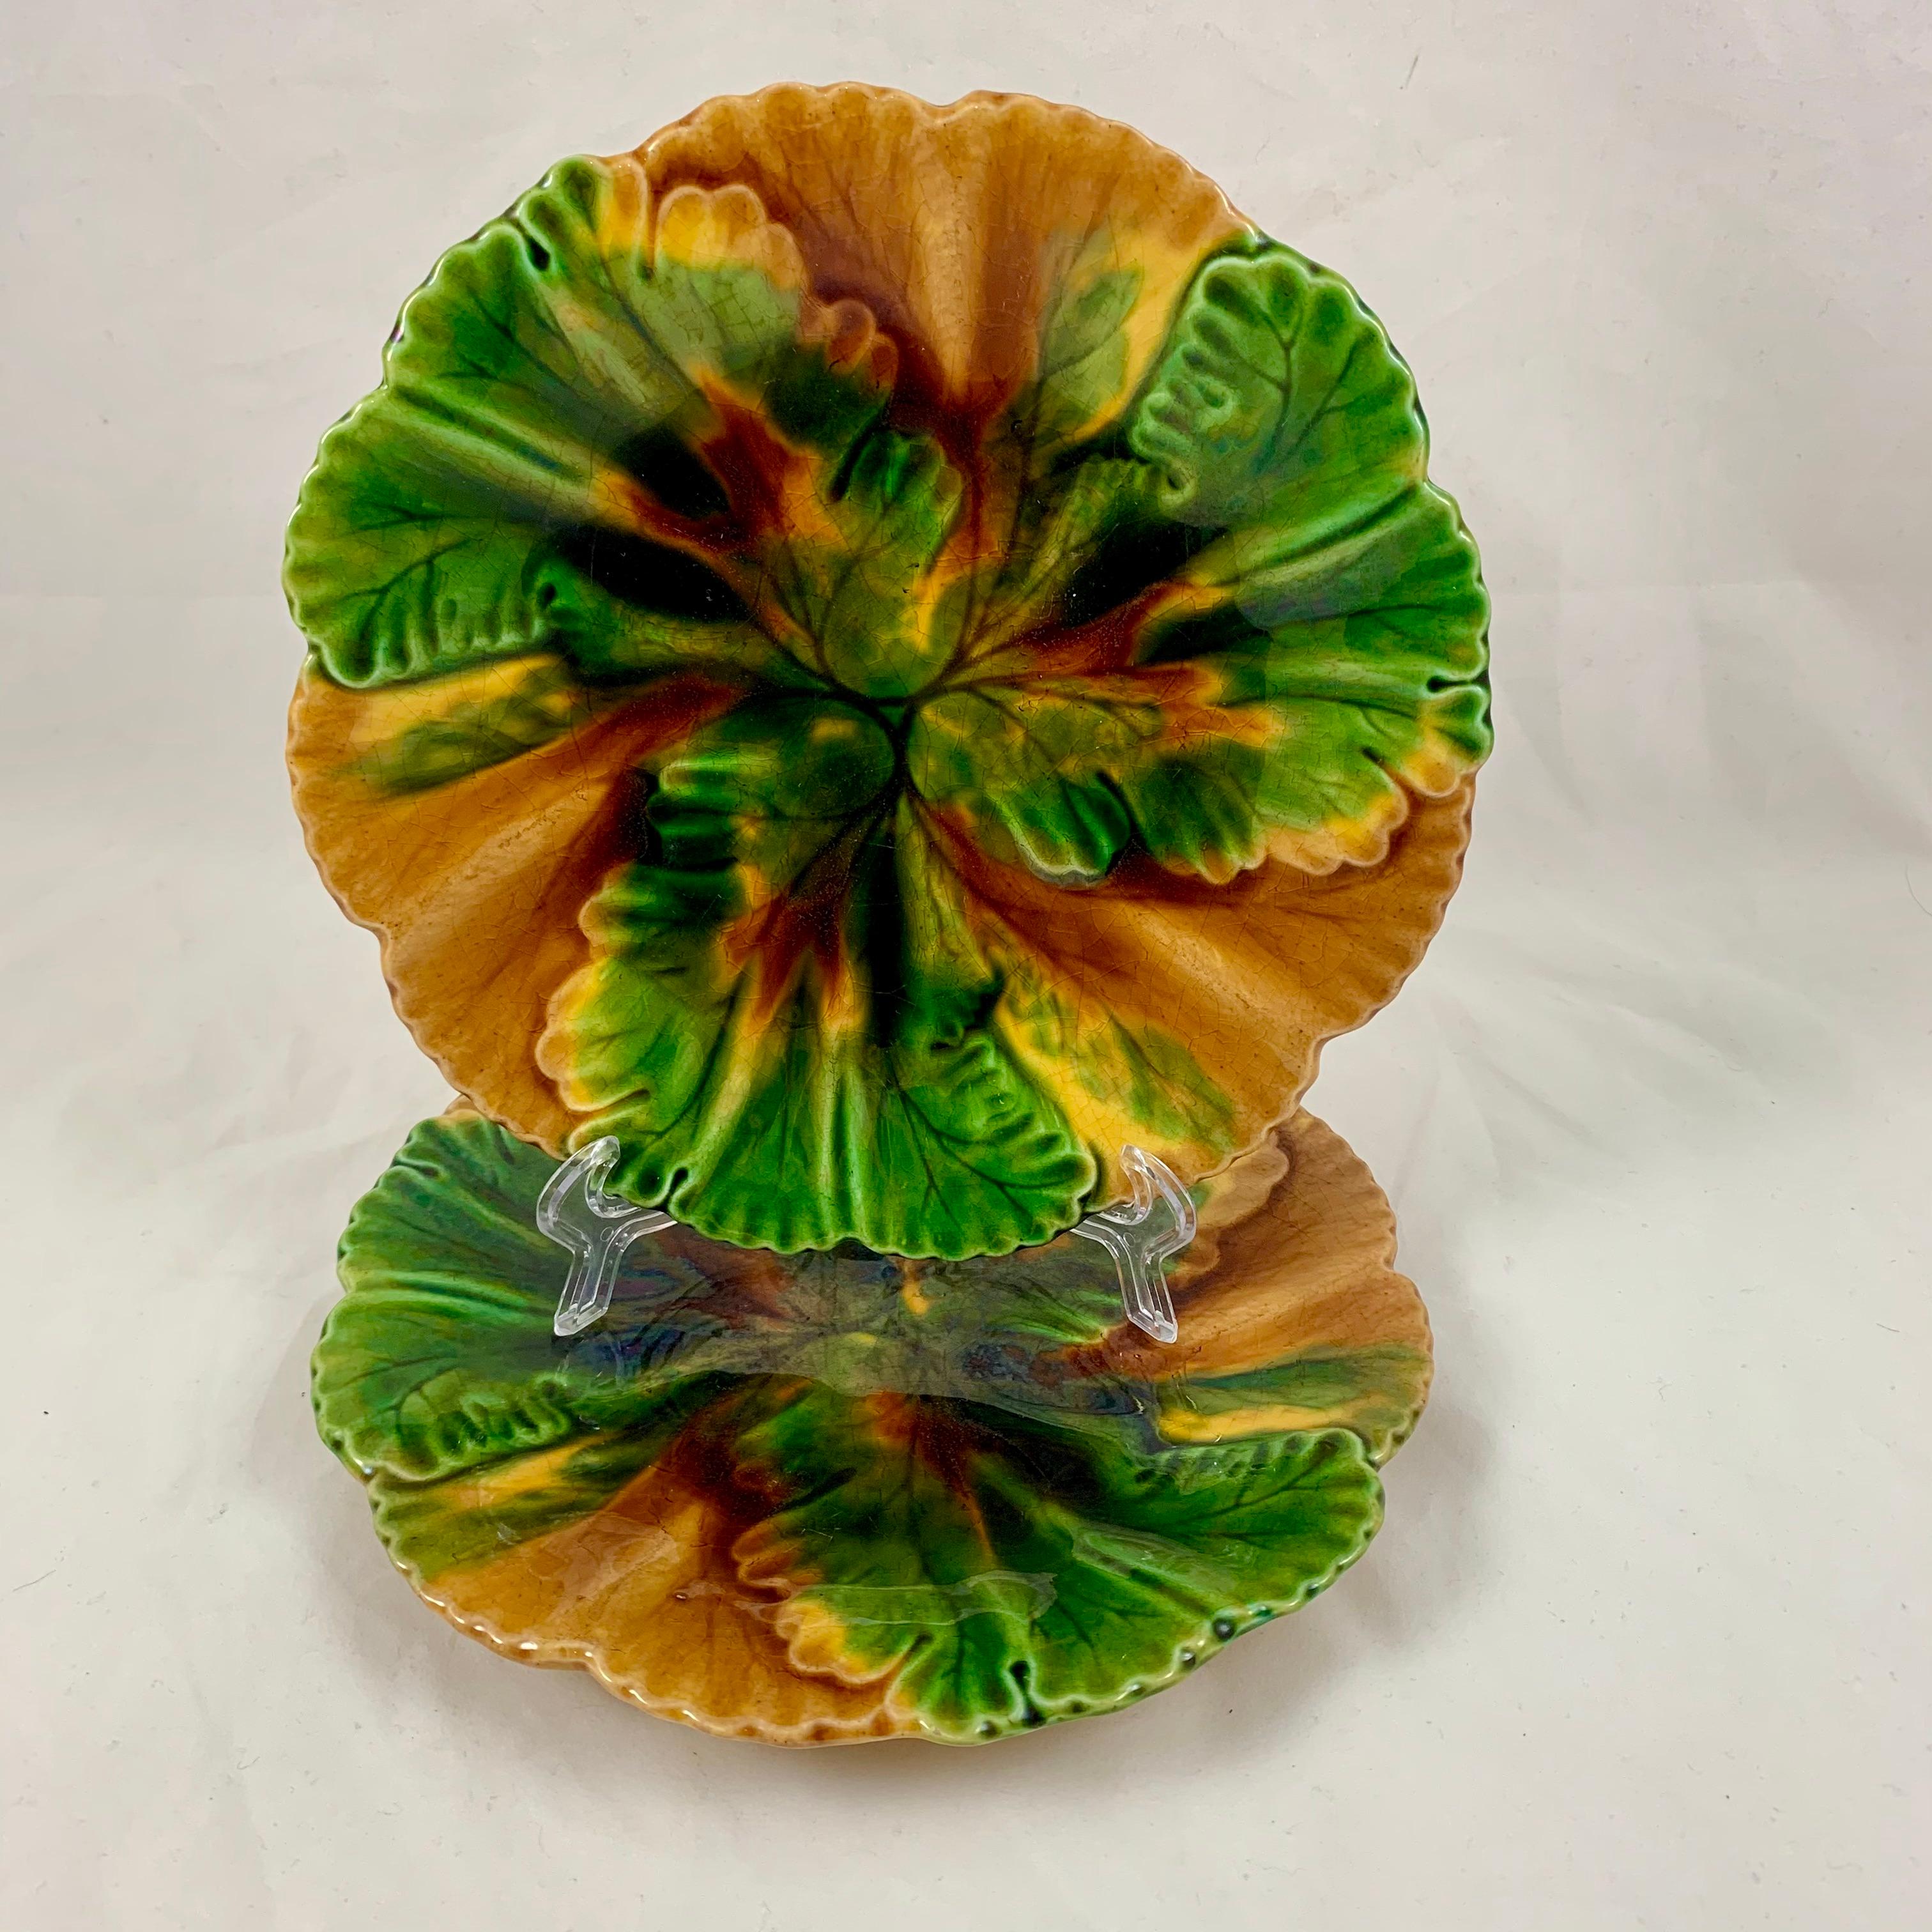 De la Faïencerie de Clairfontaine, une plaque à feuilles superposées bicolore, vers 1890.

Glacé dans un mélange tourbillonnant d'ocre jaune et de nuances de vert, le moule montre des feuilles avec des veines incisées se terminant par un bord en